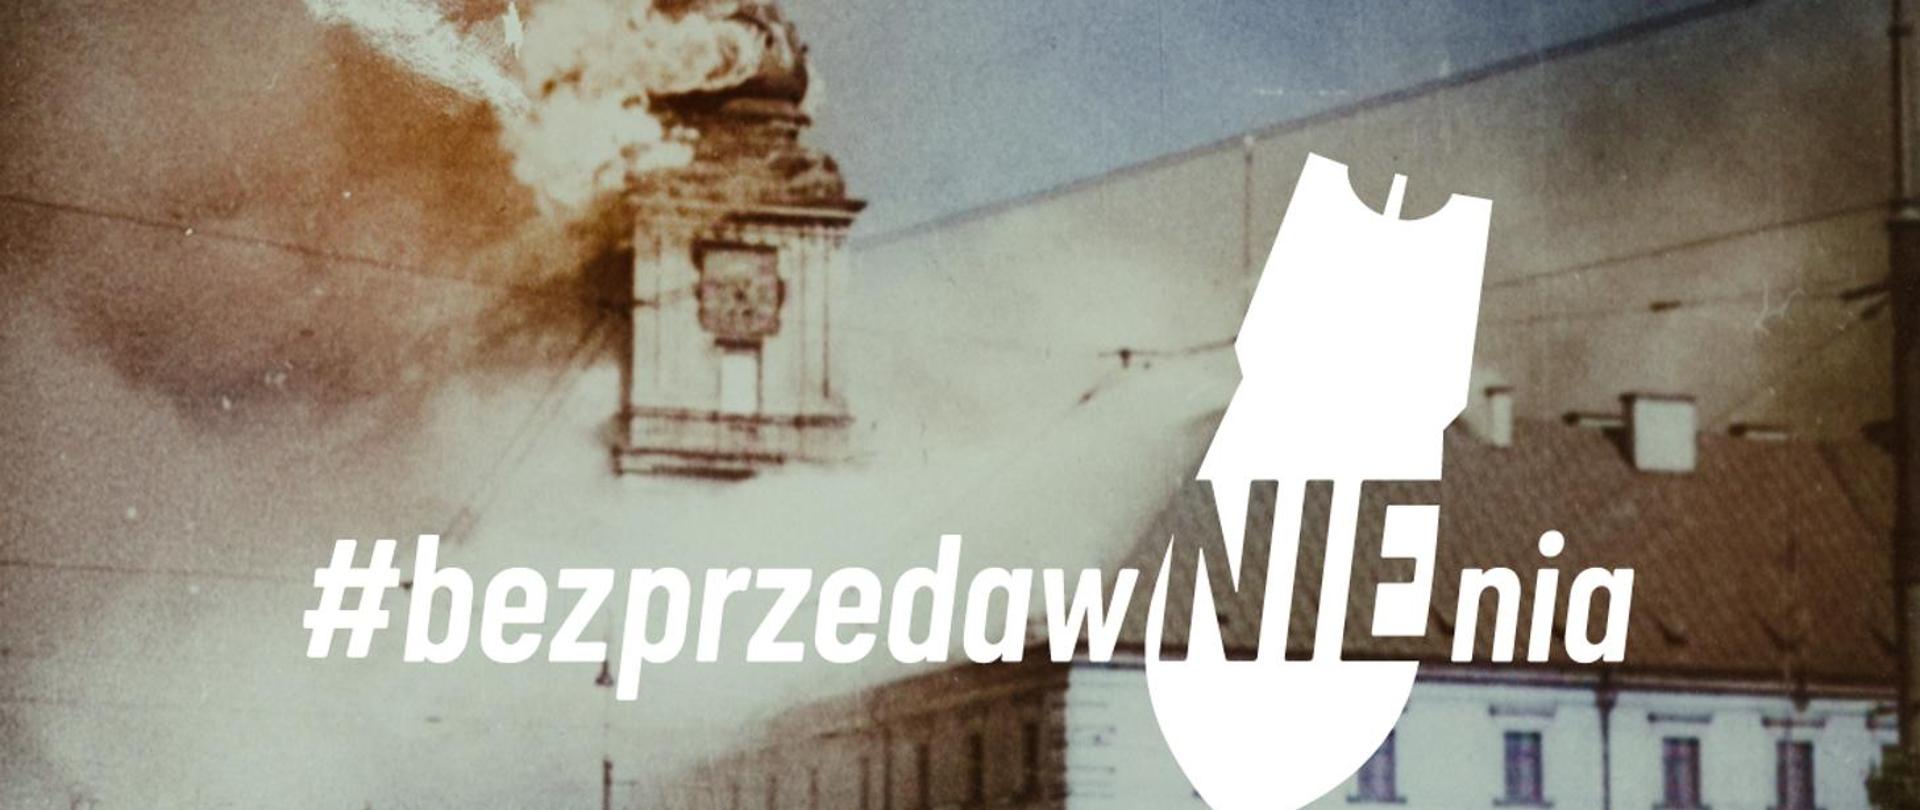 Zdjęcie obrazuje płonący Zamek Królewski i napis #bezprzedawNIEnia ze spadająca bombą